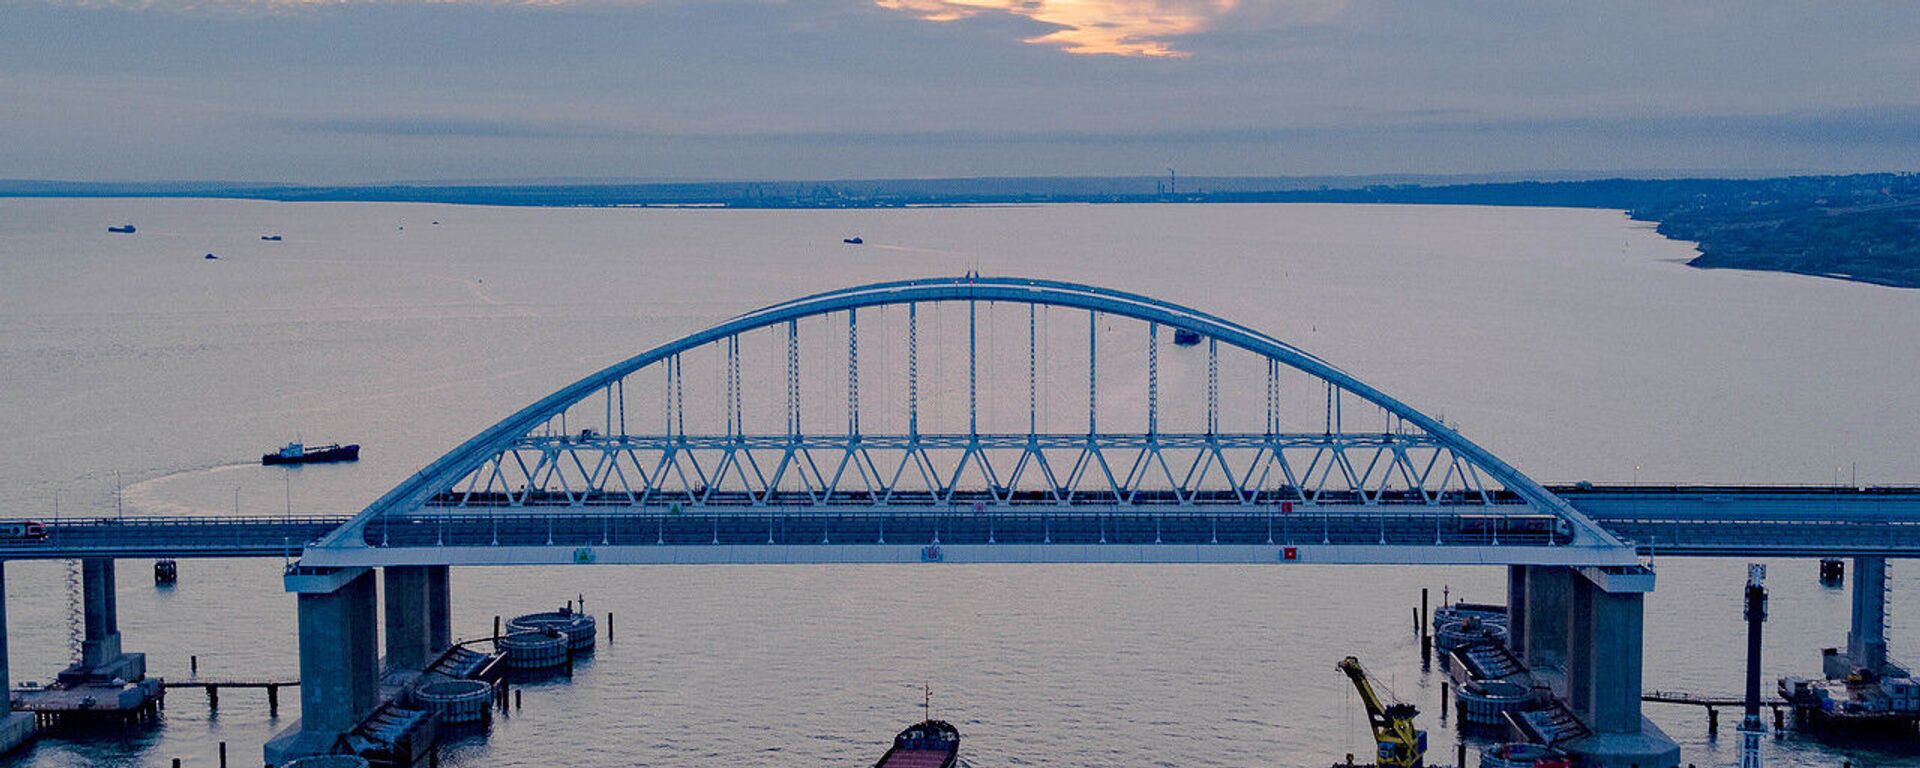 Крымский мост через Керченский пролив - Sputnik Таджикистан, 1920, 22.02.2021